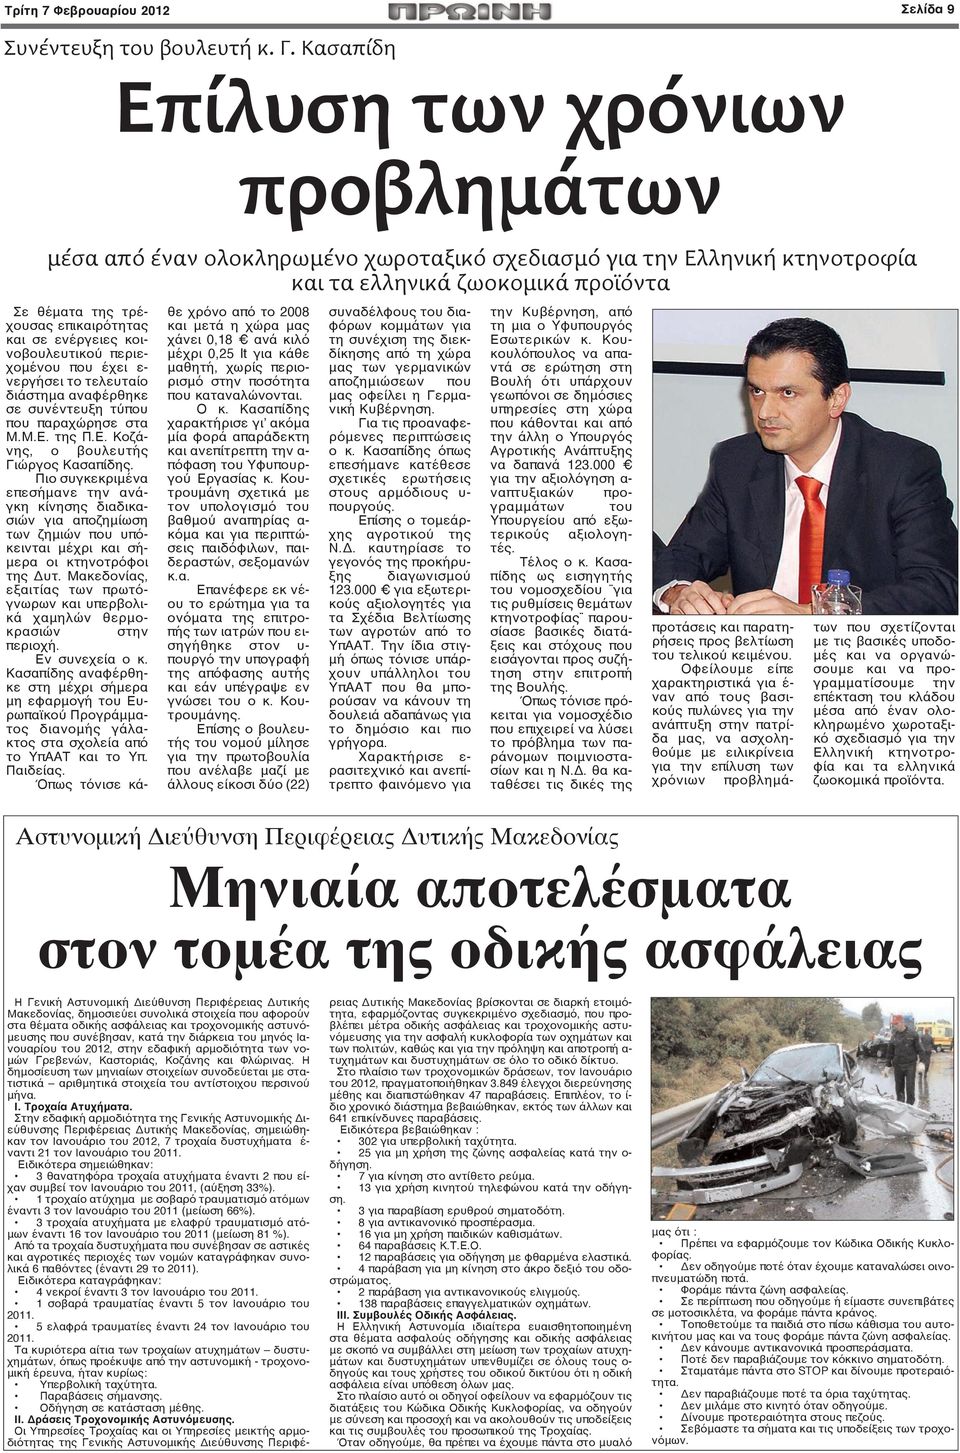 ενέργειες κοινοβουλευτικού περιεχομένου που έχει ε- νεργήσει το τελευταίο διάστημα αναφέρθηκε σε συνέντευξη τύπου που παραχώρησε στα Μ.Μ.Ε. της Π.Ε. Κοζάνης, ο βουλευτής Γιώργος Κασαπίδης.